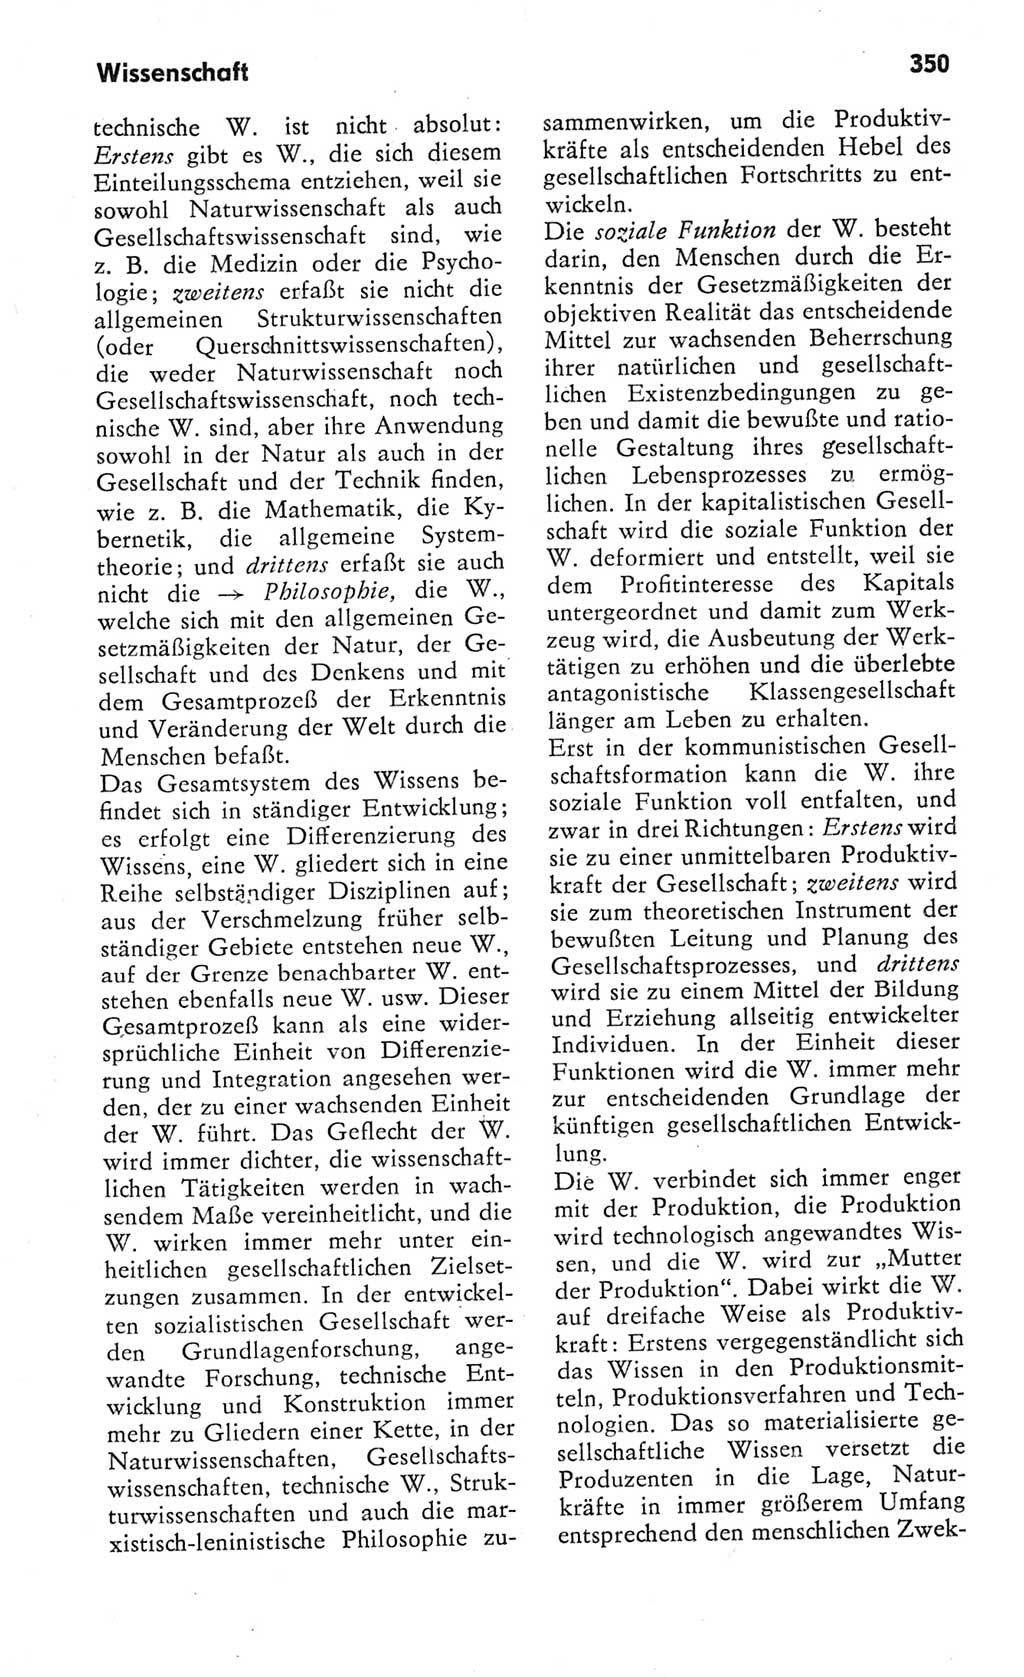 Kleines Wörterbuch der marxistisch-leninistischen Philosophie [Deutsche Demokratische Republik (DDR)] 1982, Seite 350 (Kl. Wb. ML Phil. DDR 1982, S. 350)